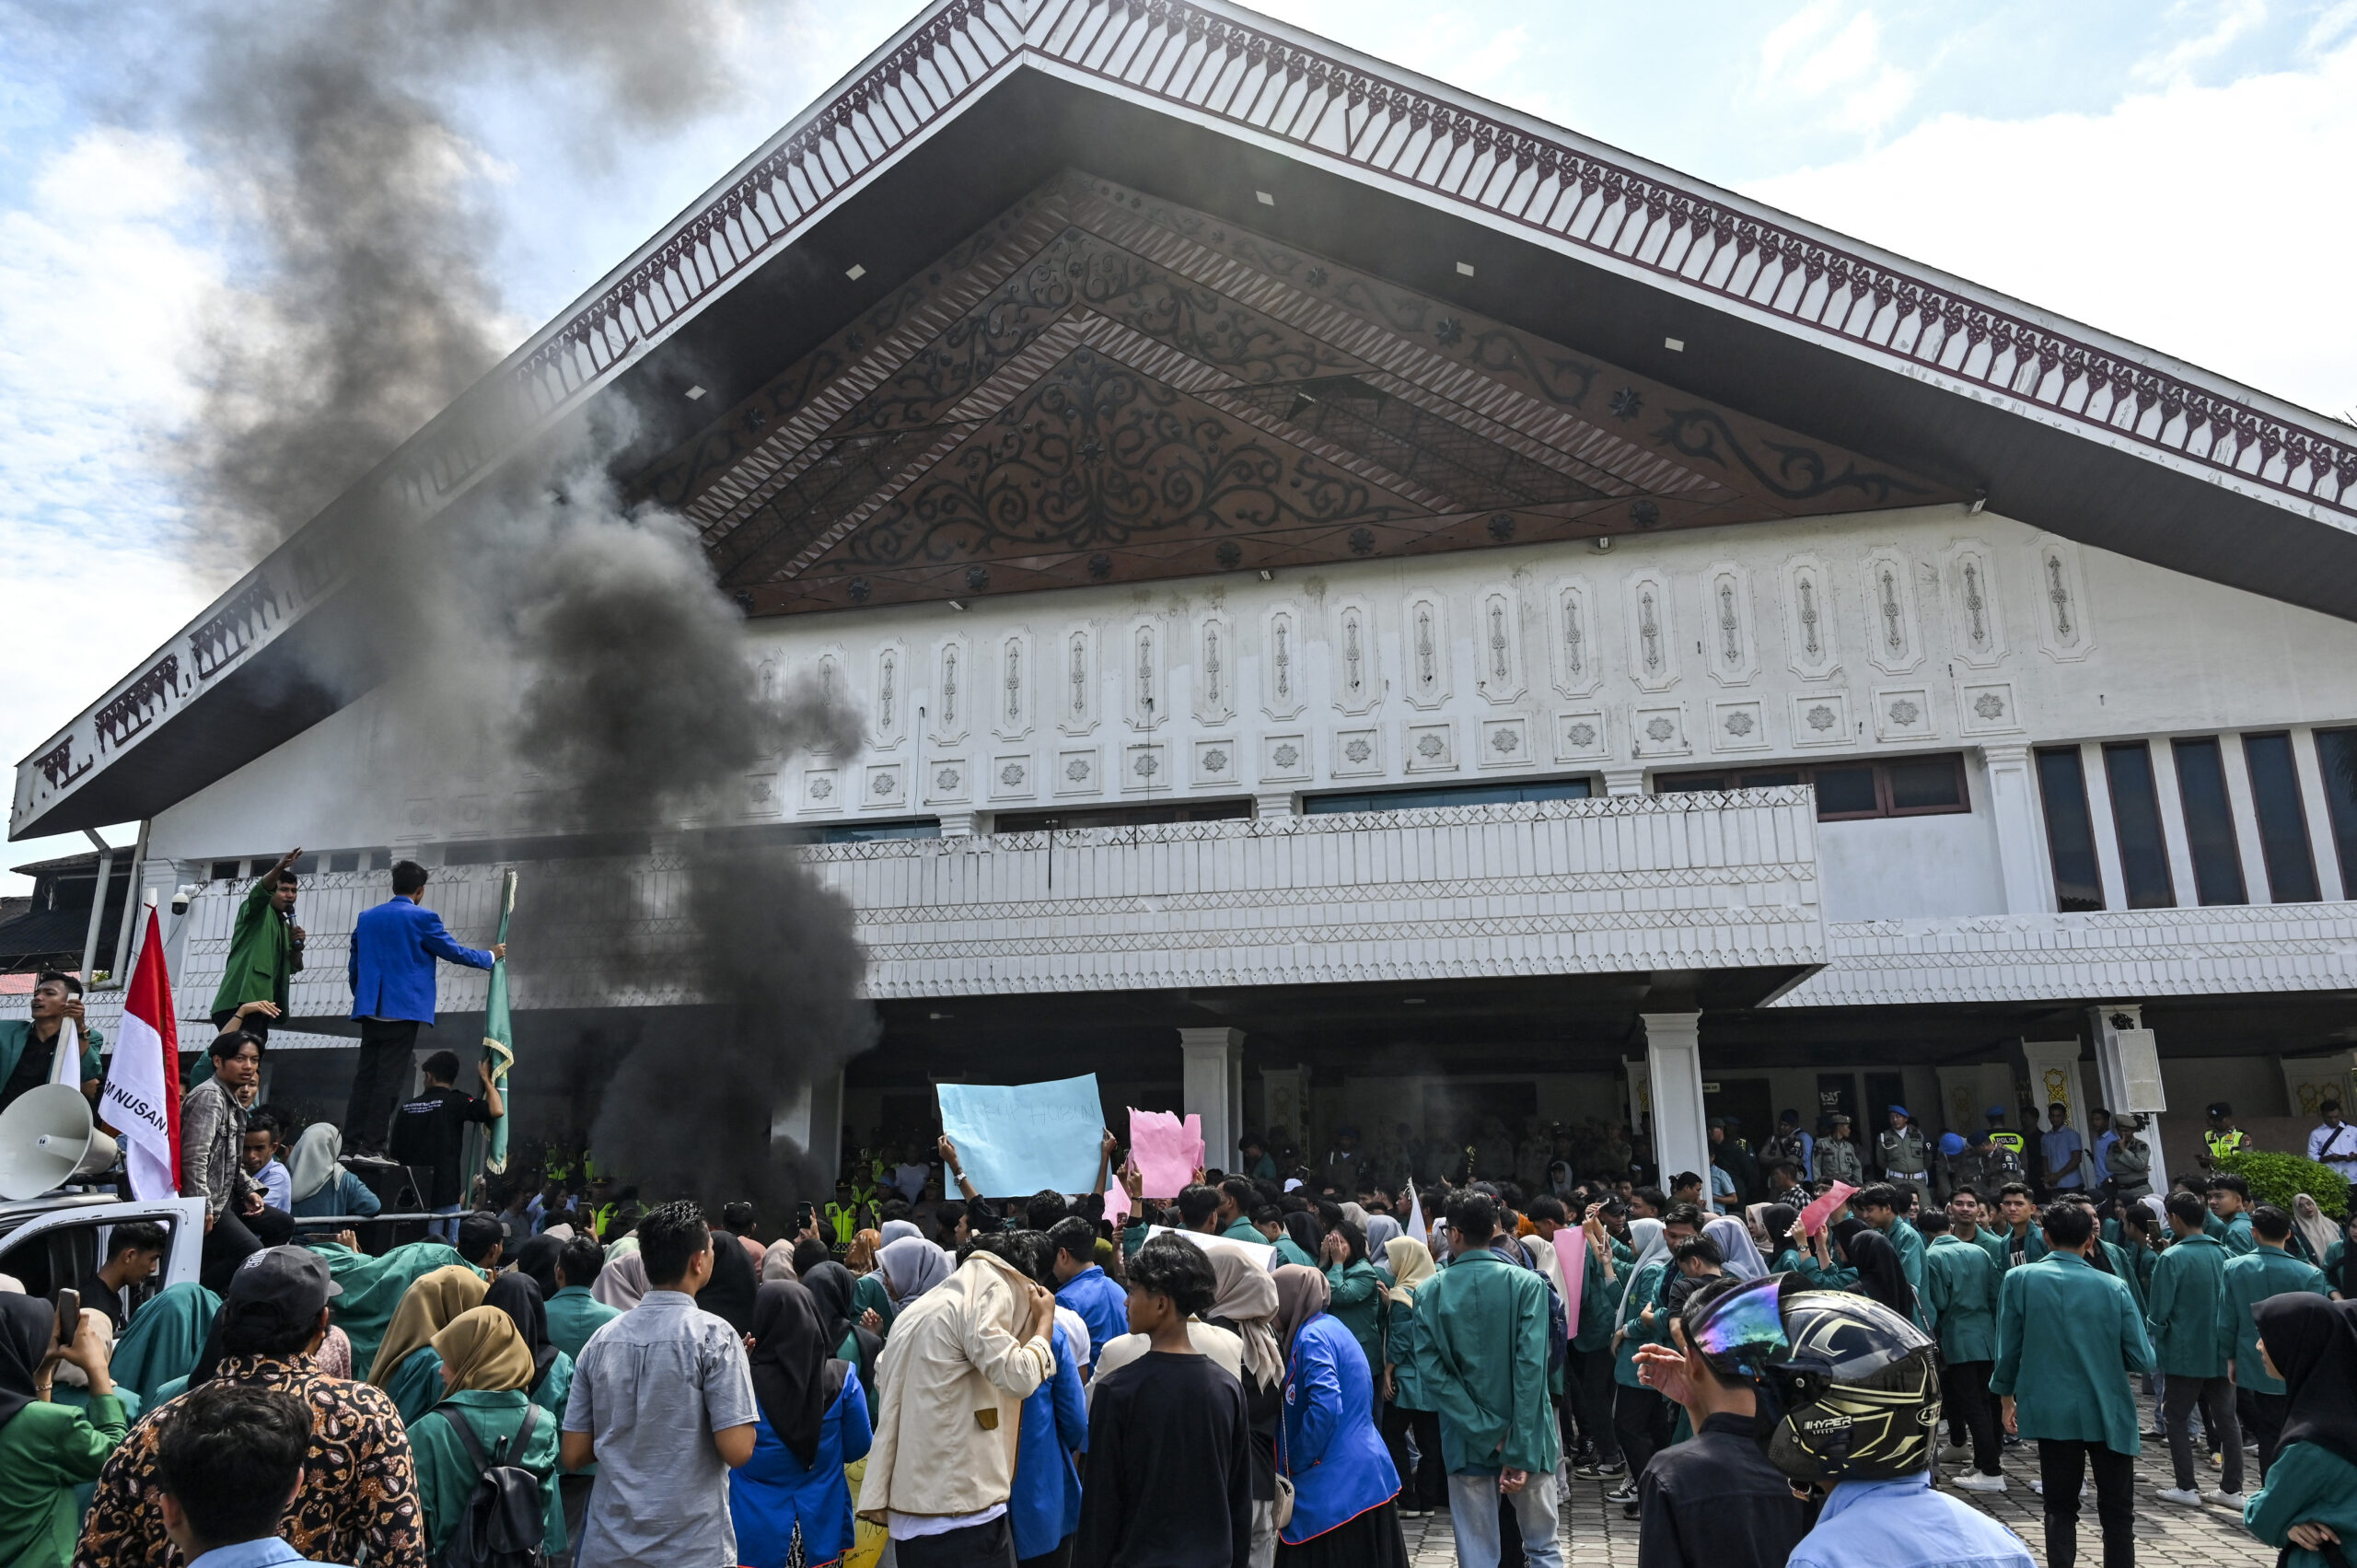 Ινδονησία: Διαδήλωση μπροστά σε εργοστάσιο επεξεργασίας νικελίου μετά την πολύνεκρη έκρηξη